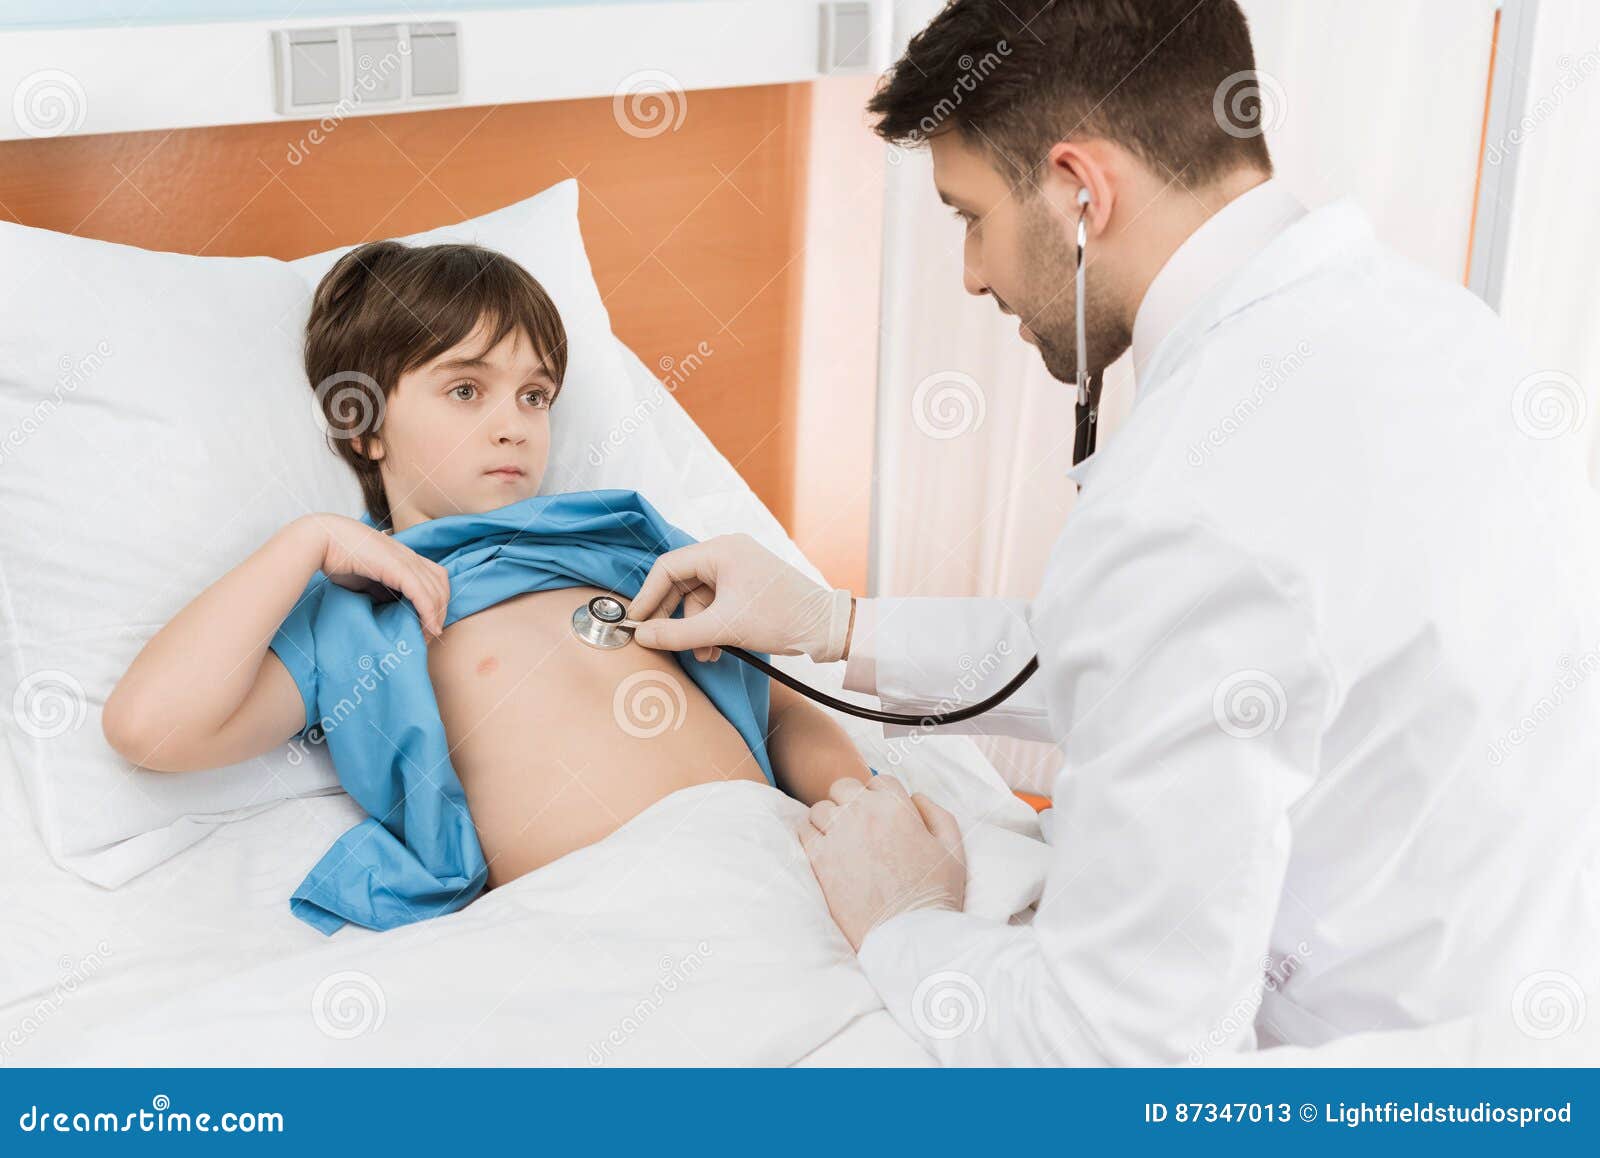 Гол осматривает врач. Врач осматривает ребенка. Врач осматривает живот ребенка. Врач осматривает мальчика. Доктор осматривает грудничка мальчика.